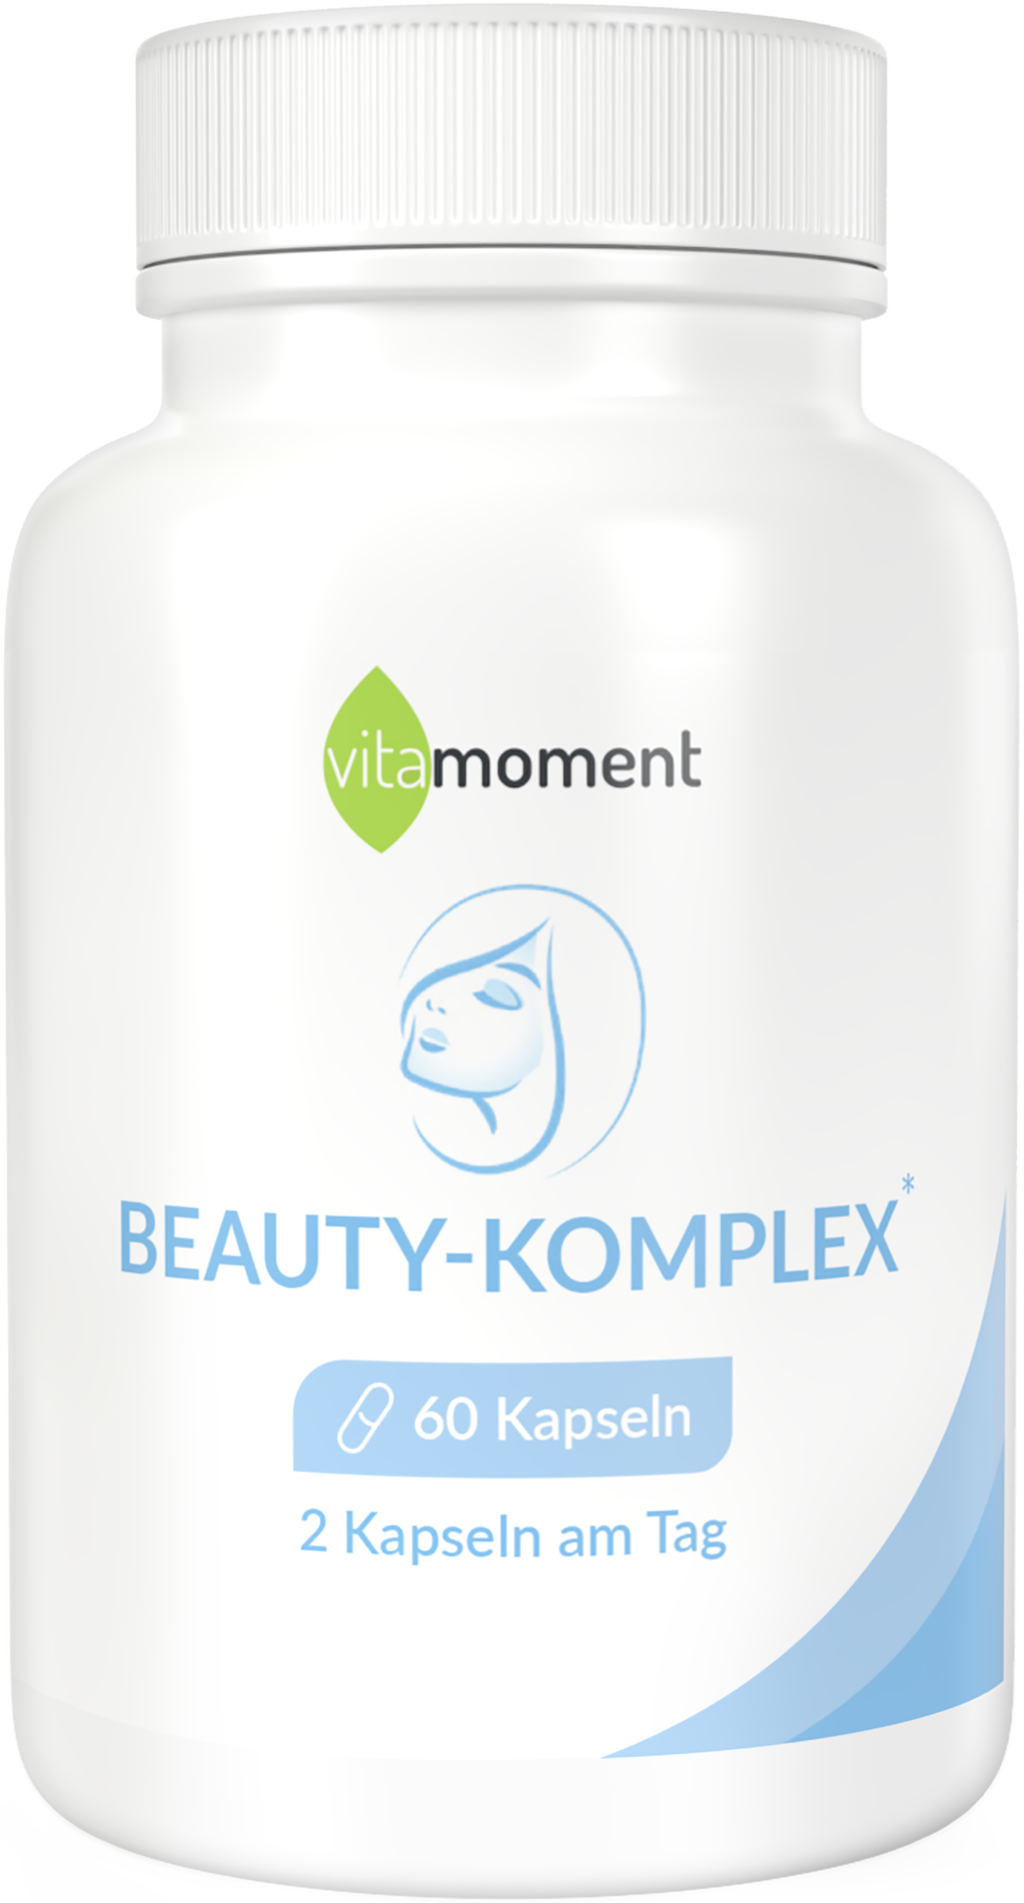 Beauty-Komplex - 1 Dose - VitaMoment Produkt